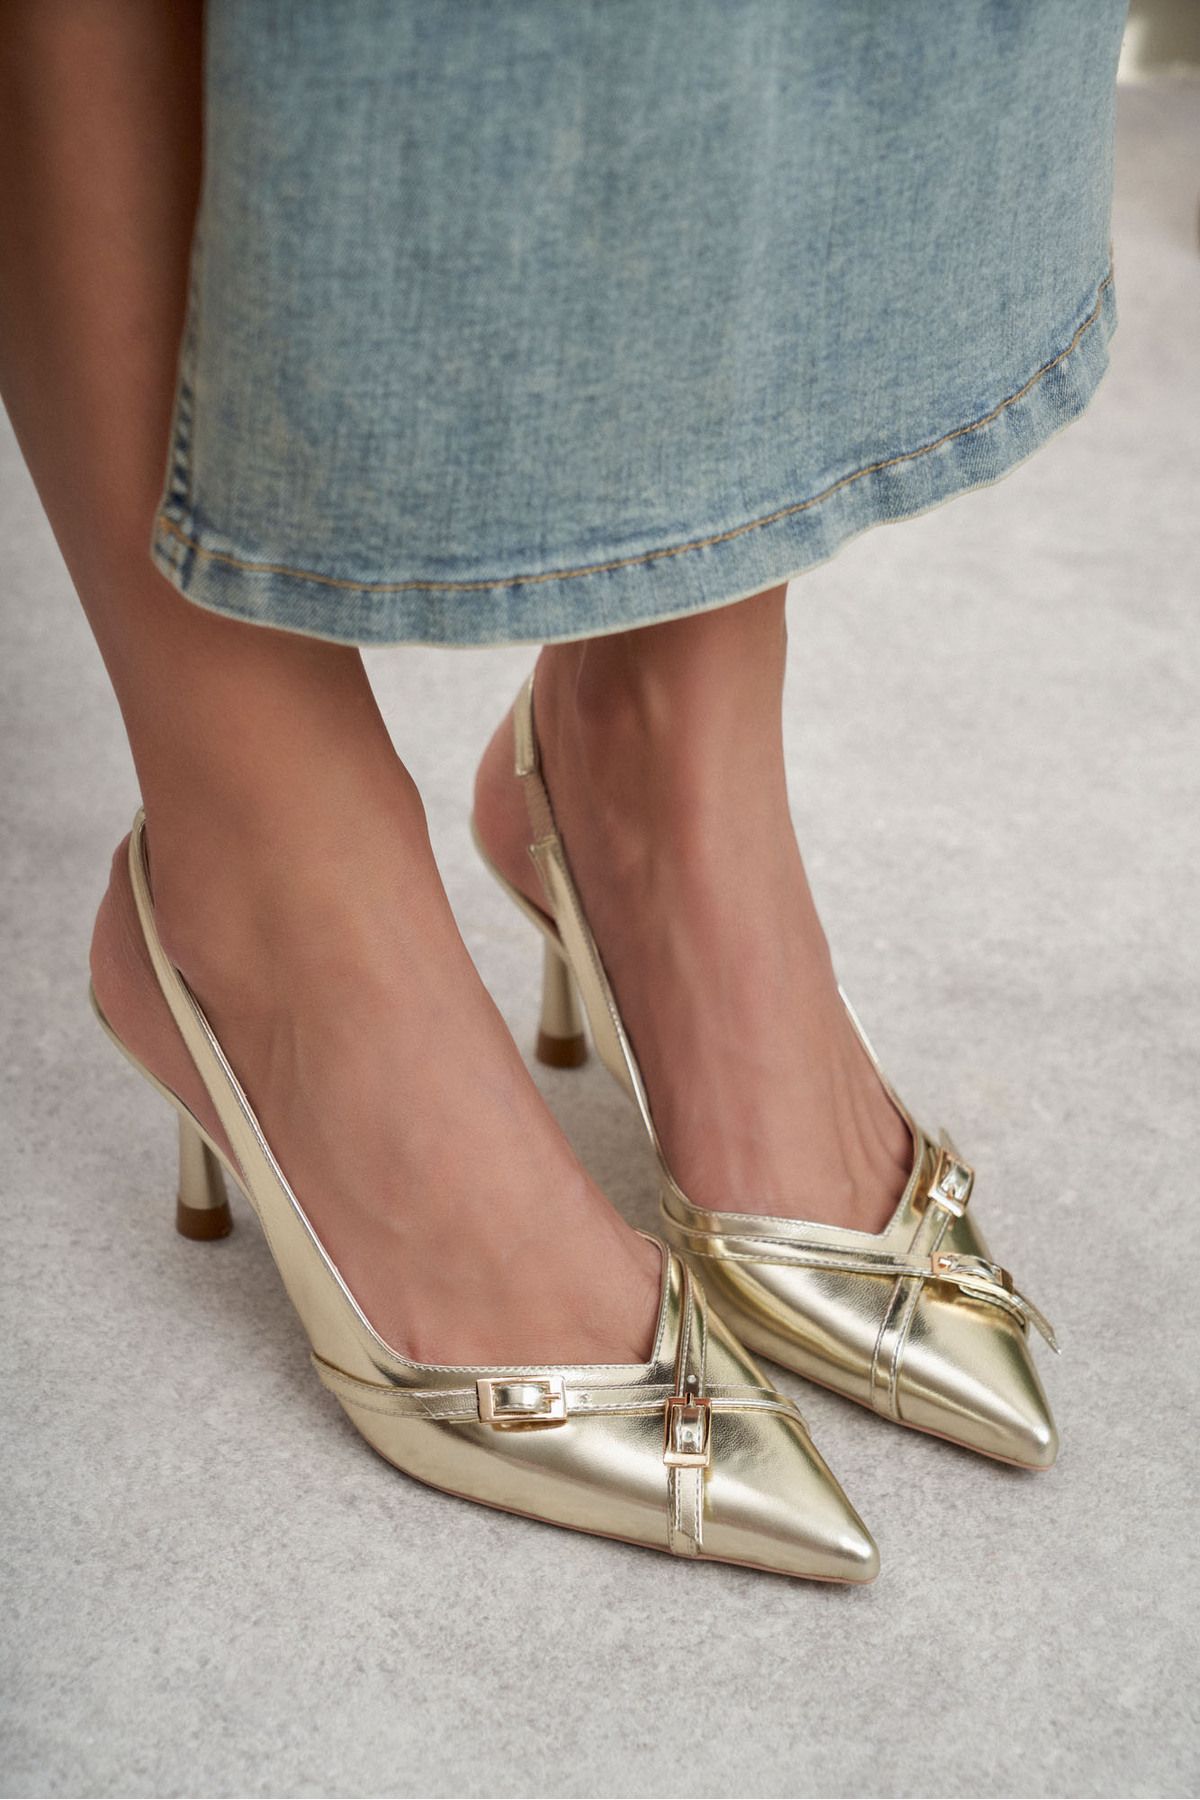 NİŞANTAŞI SHOES Platte Altın Mat Kemer Detay Bilek Bağlı Kadın Topuklu Ayakkabı